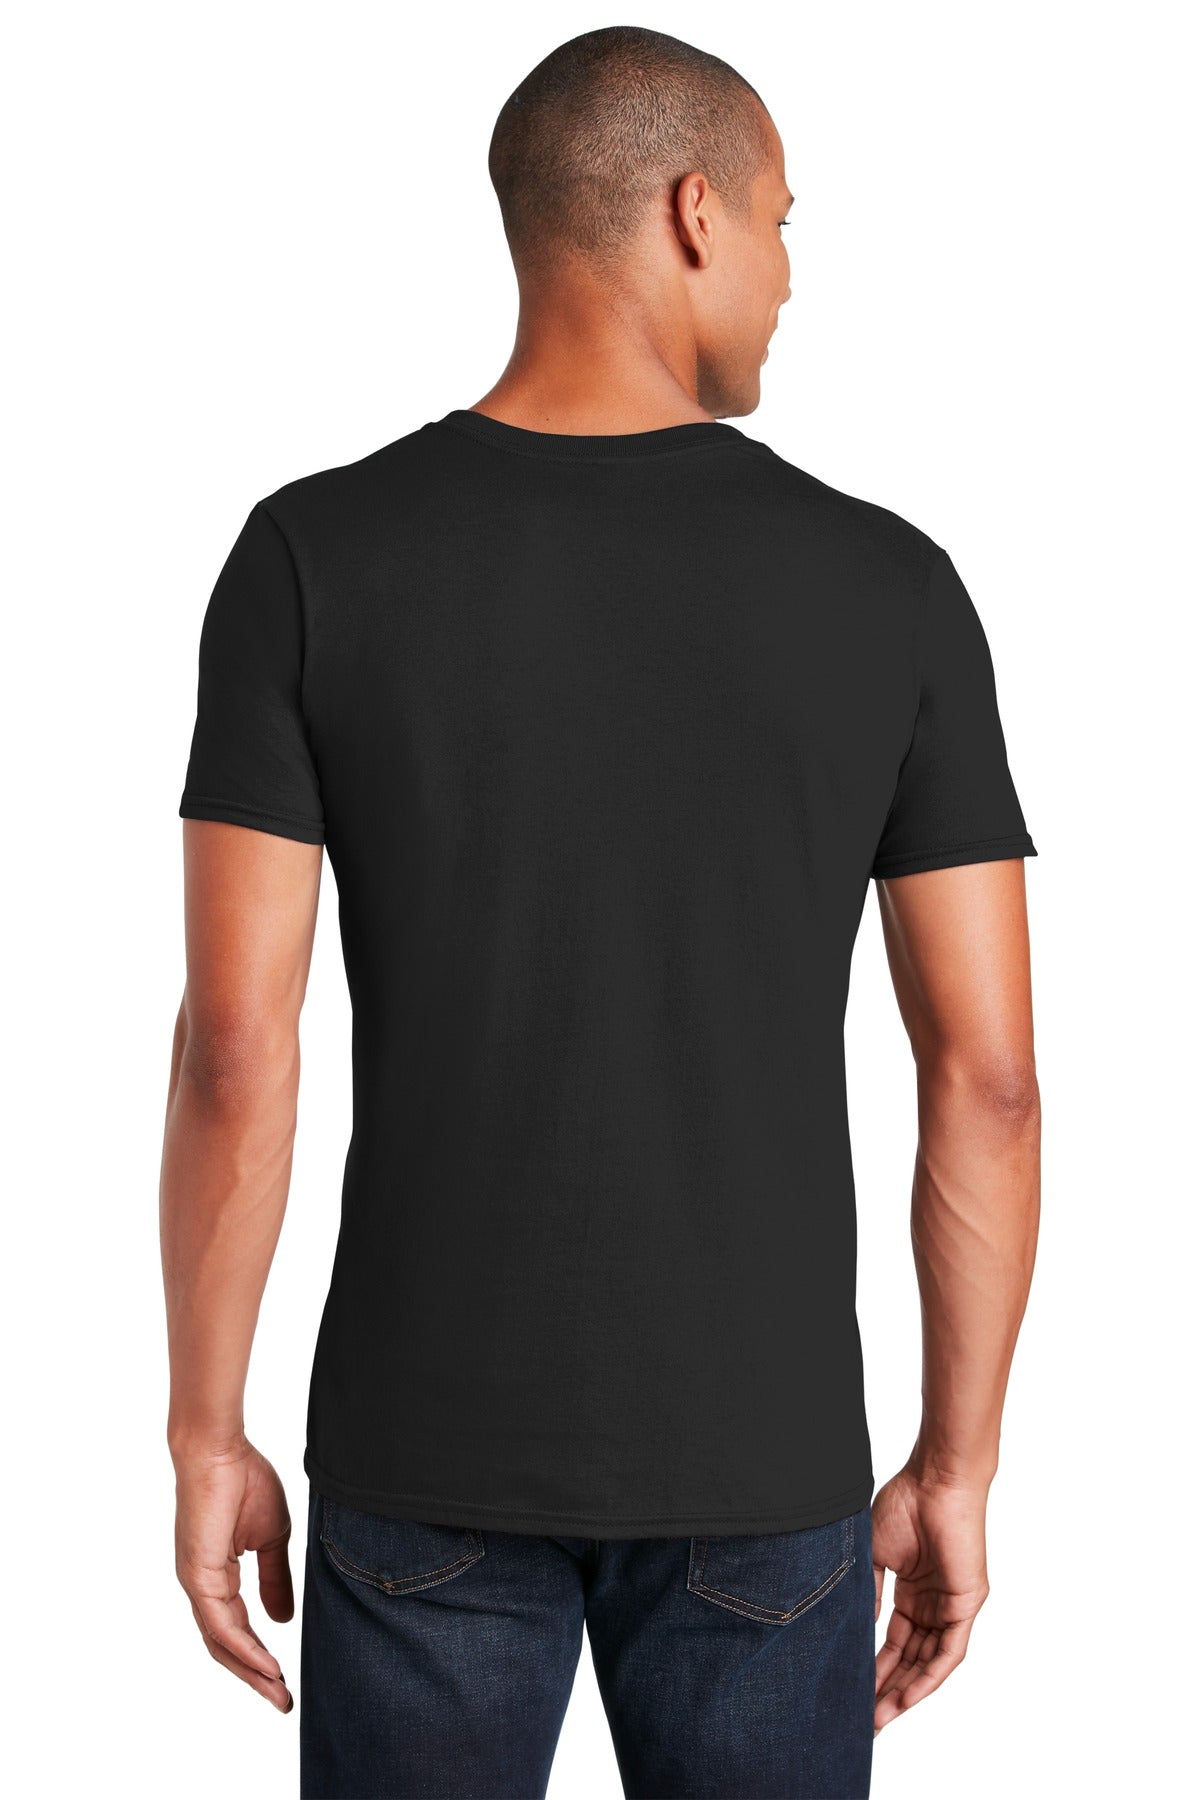 Gildan Softstyle® V-Neck T-Shirt. 64V00 - DFW Impression